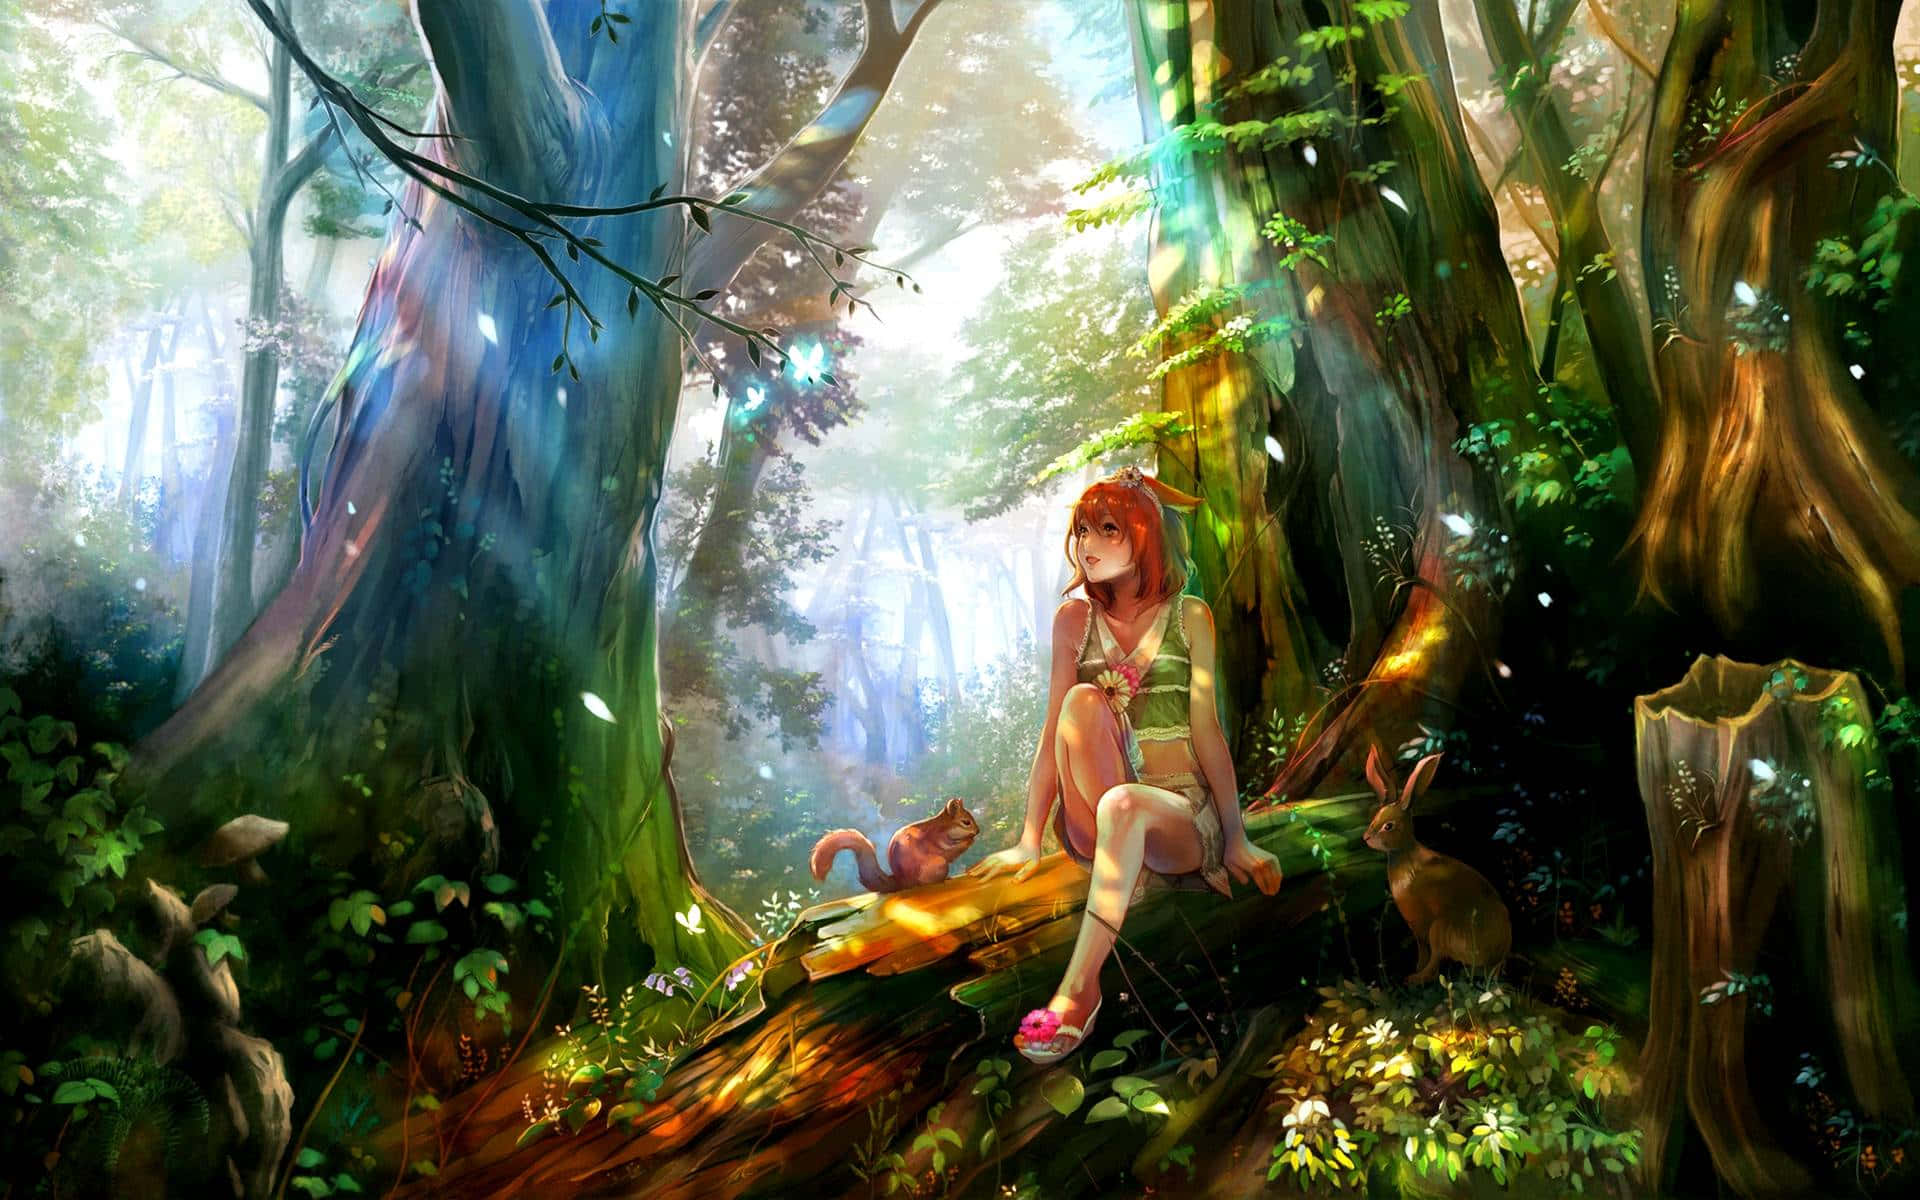 Rejsigennem Det Fortryllede Anime-skov